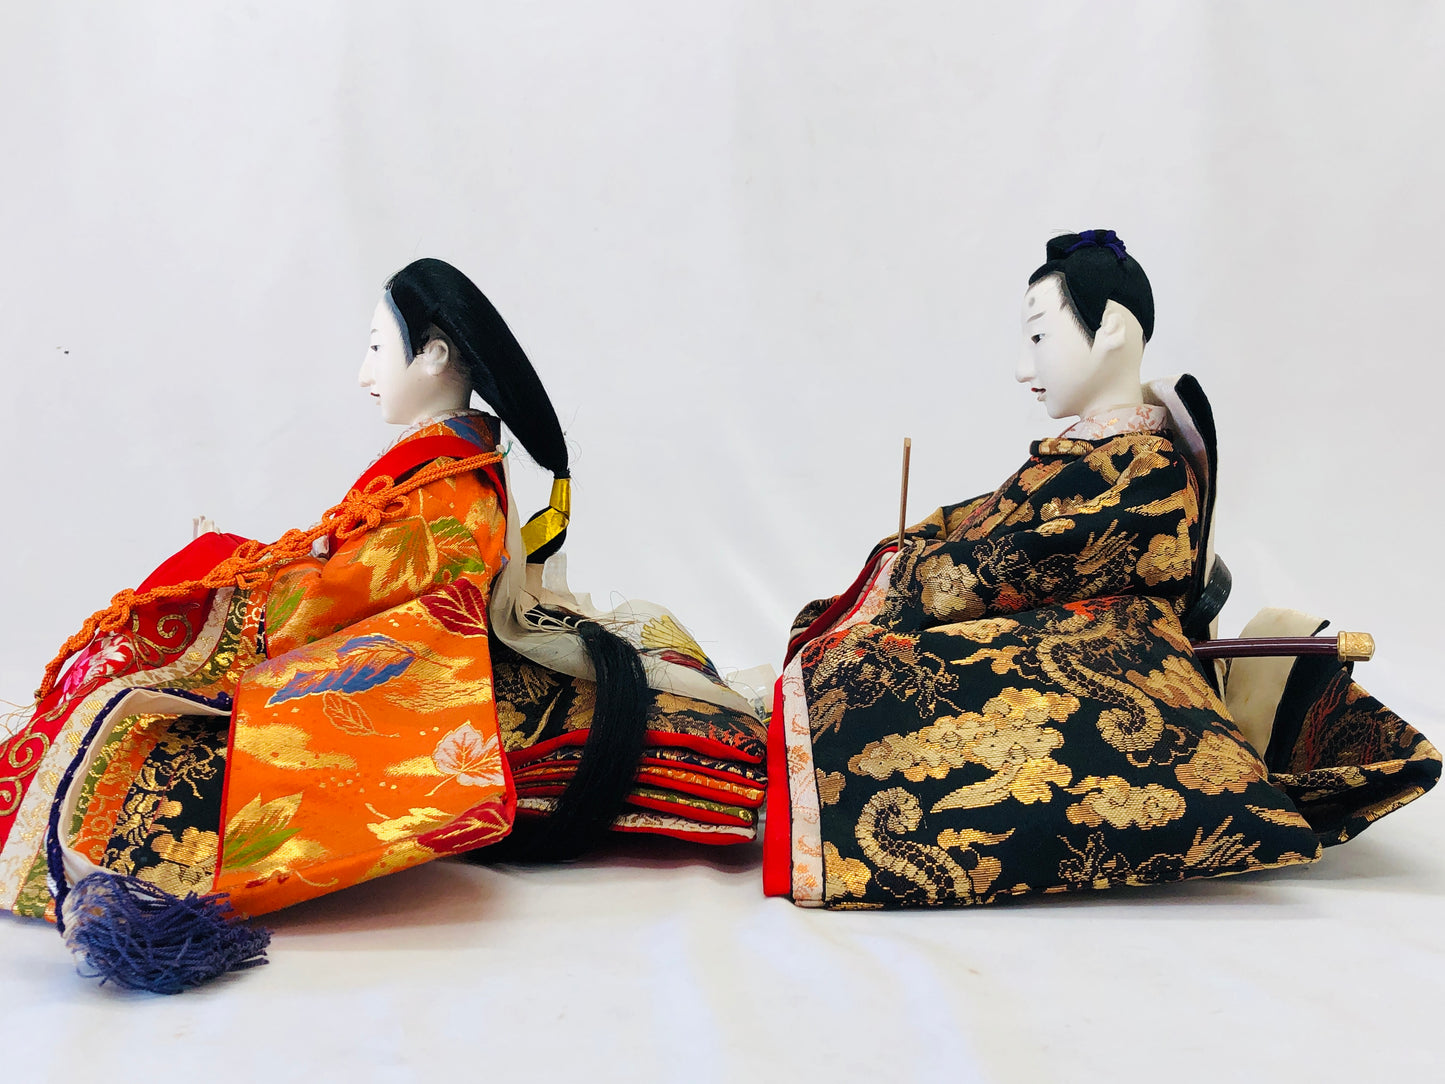 Y5151 NINGYO Hina Kimekomi Japanese doll figure Japan vintage antique figurine